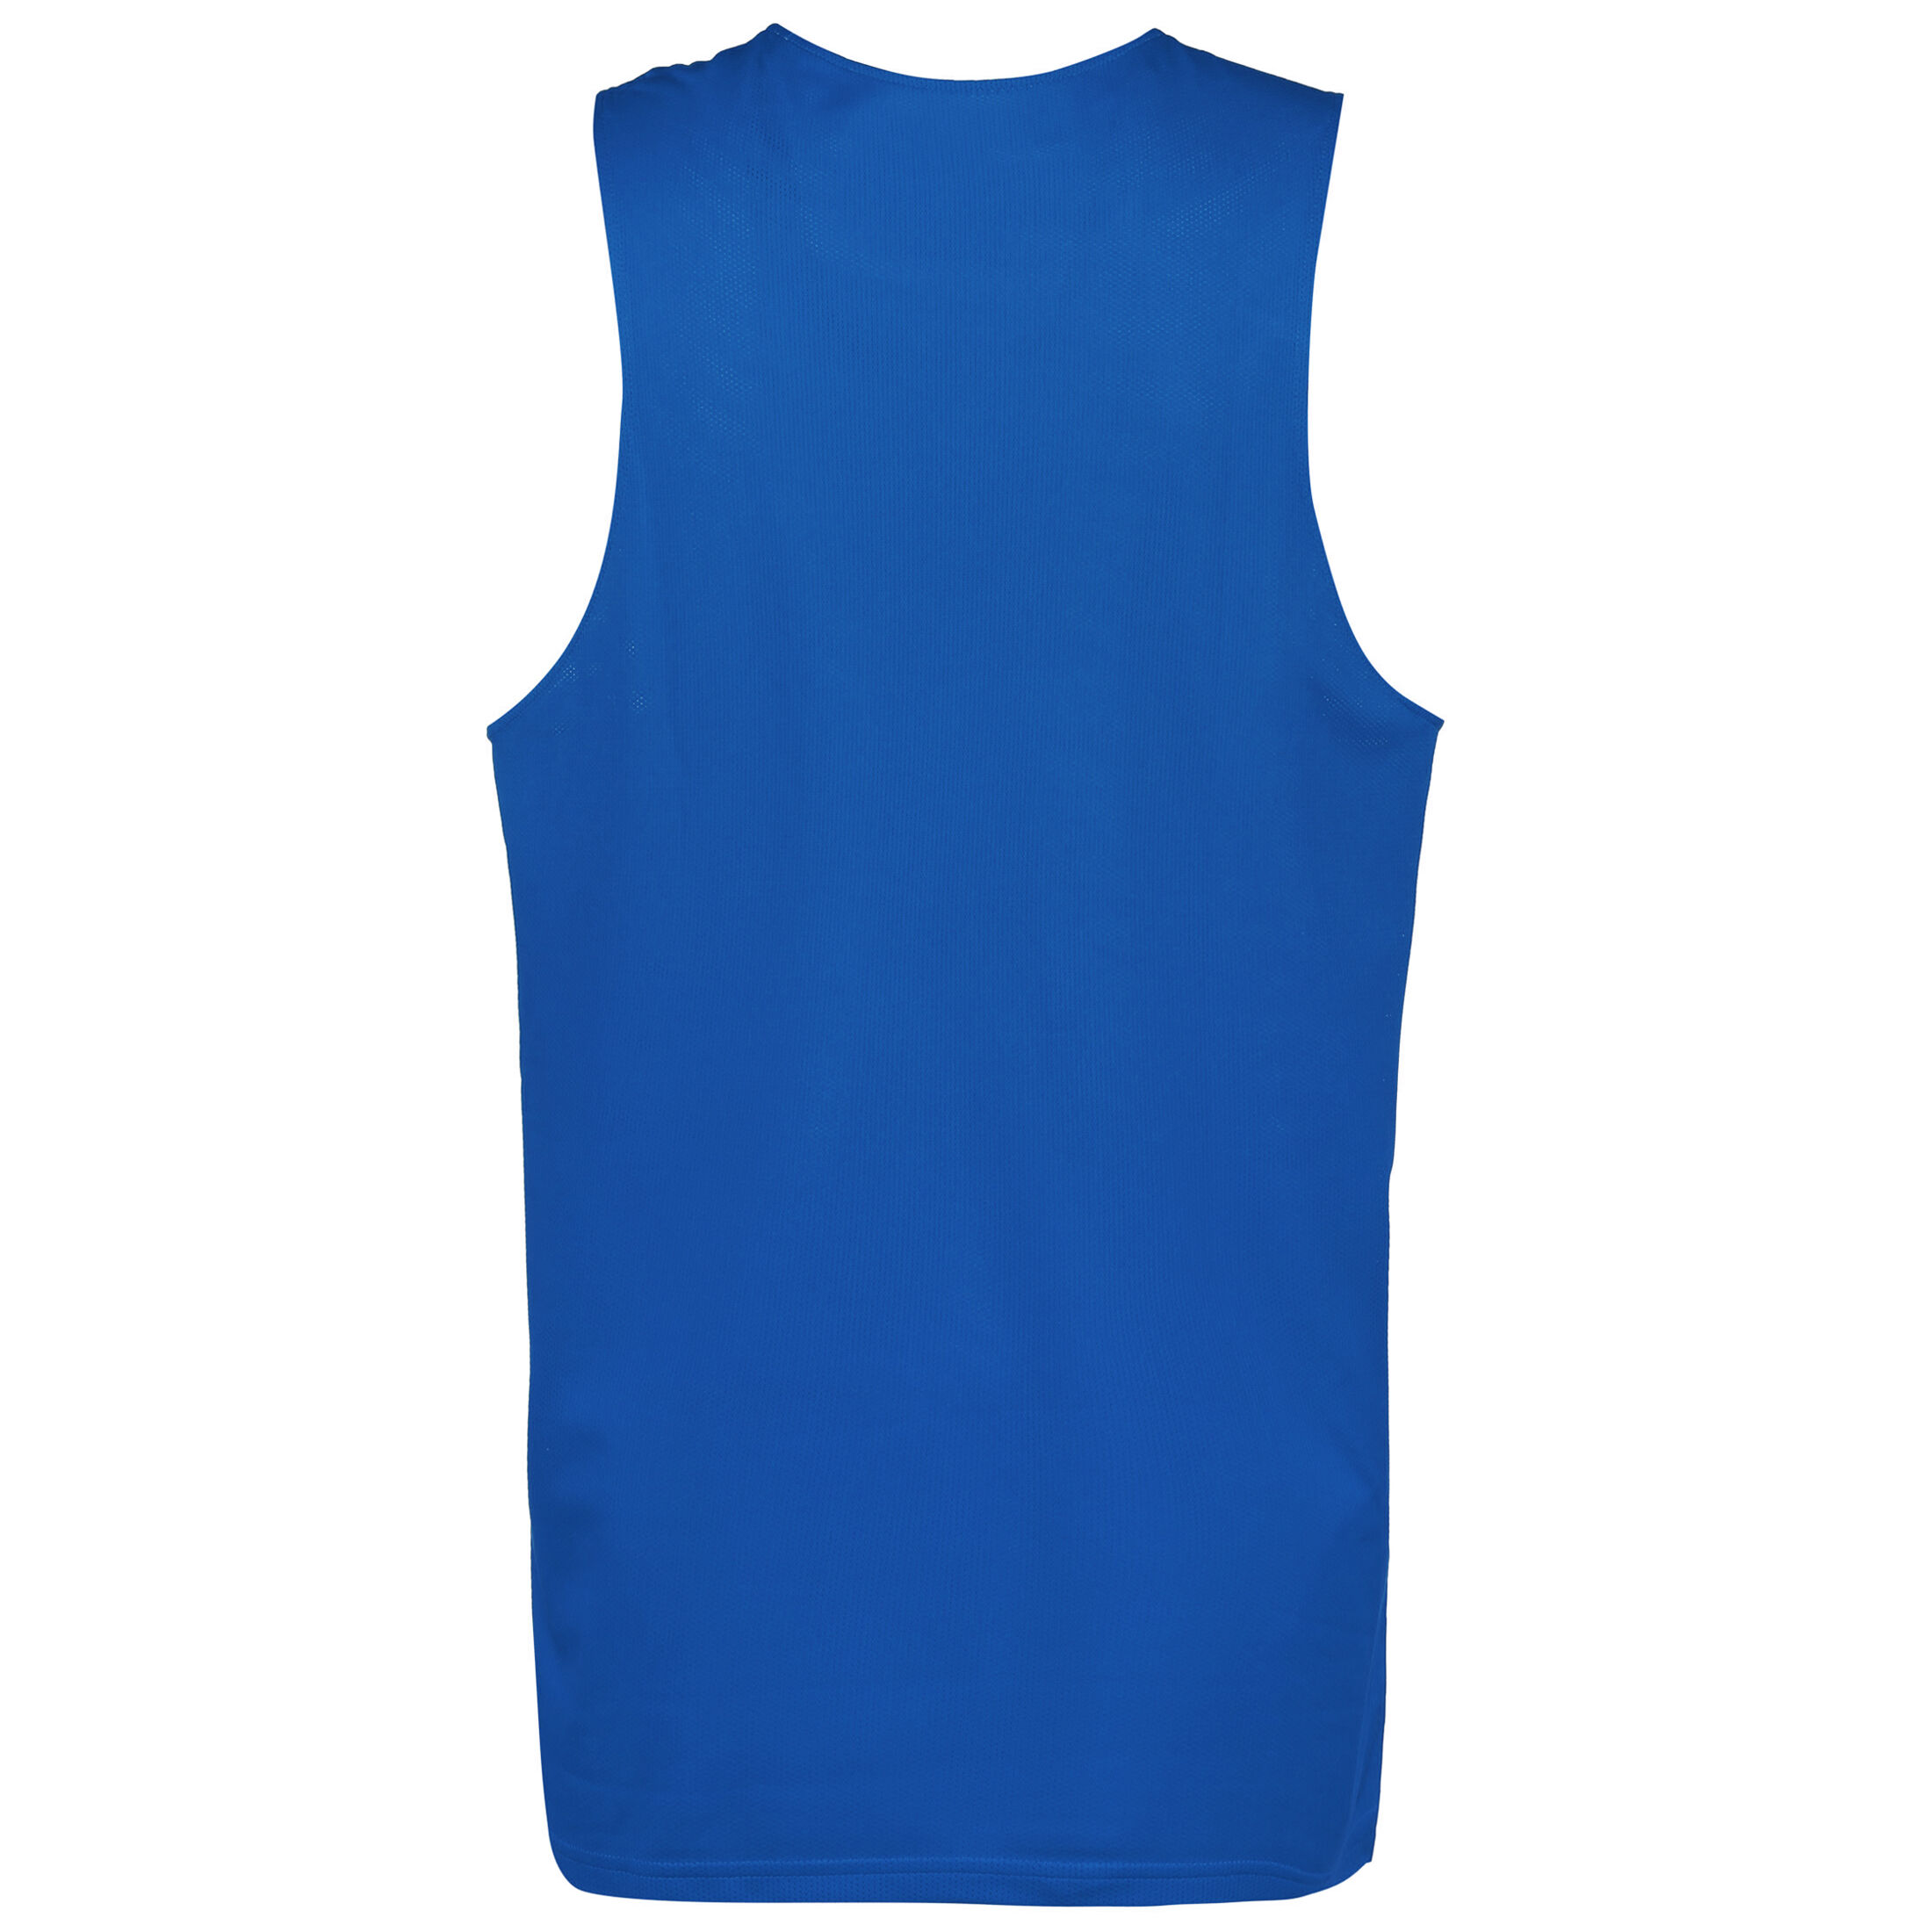 Рубашка Puma Basketballtrikot practisPractice, синий